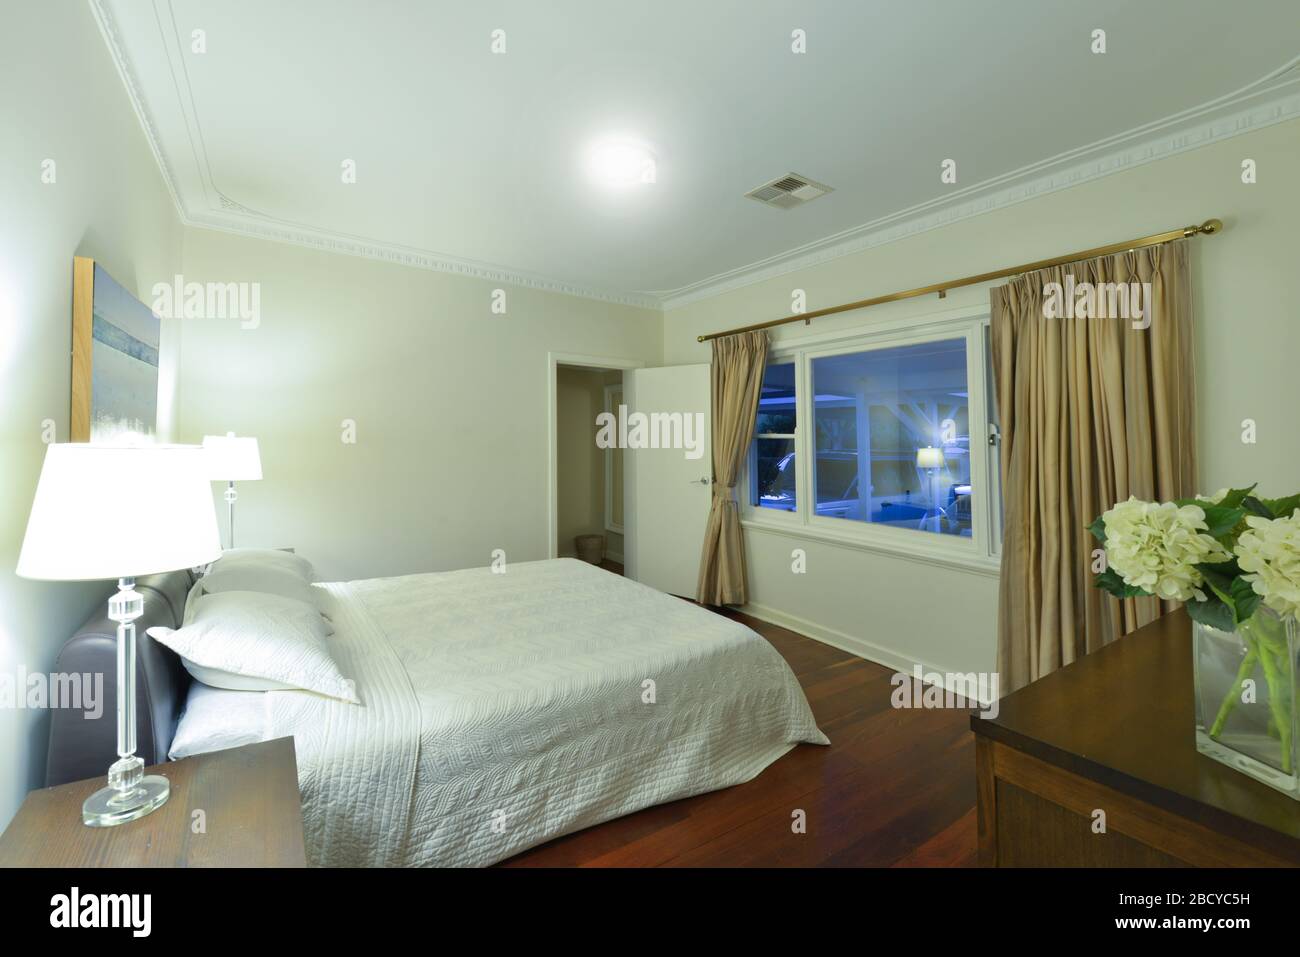 La camera da letto di una moderna casa di famiglia in stile bungalow australiano. Foto Stock